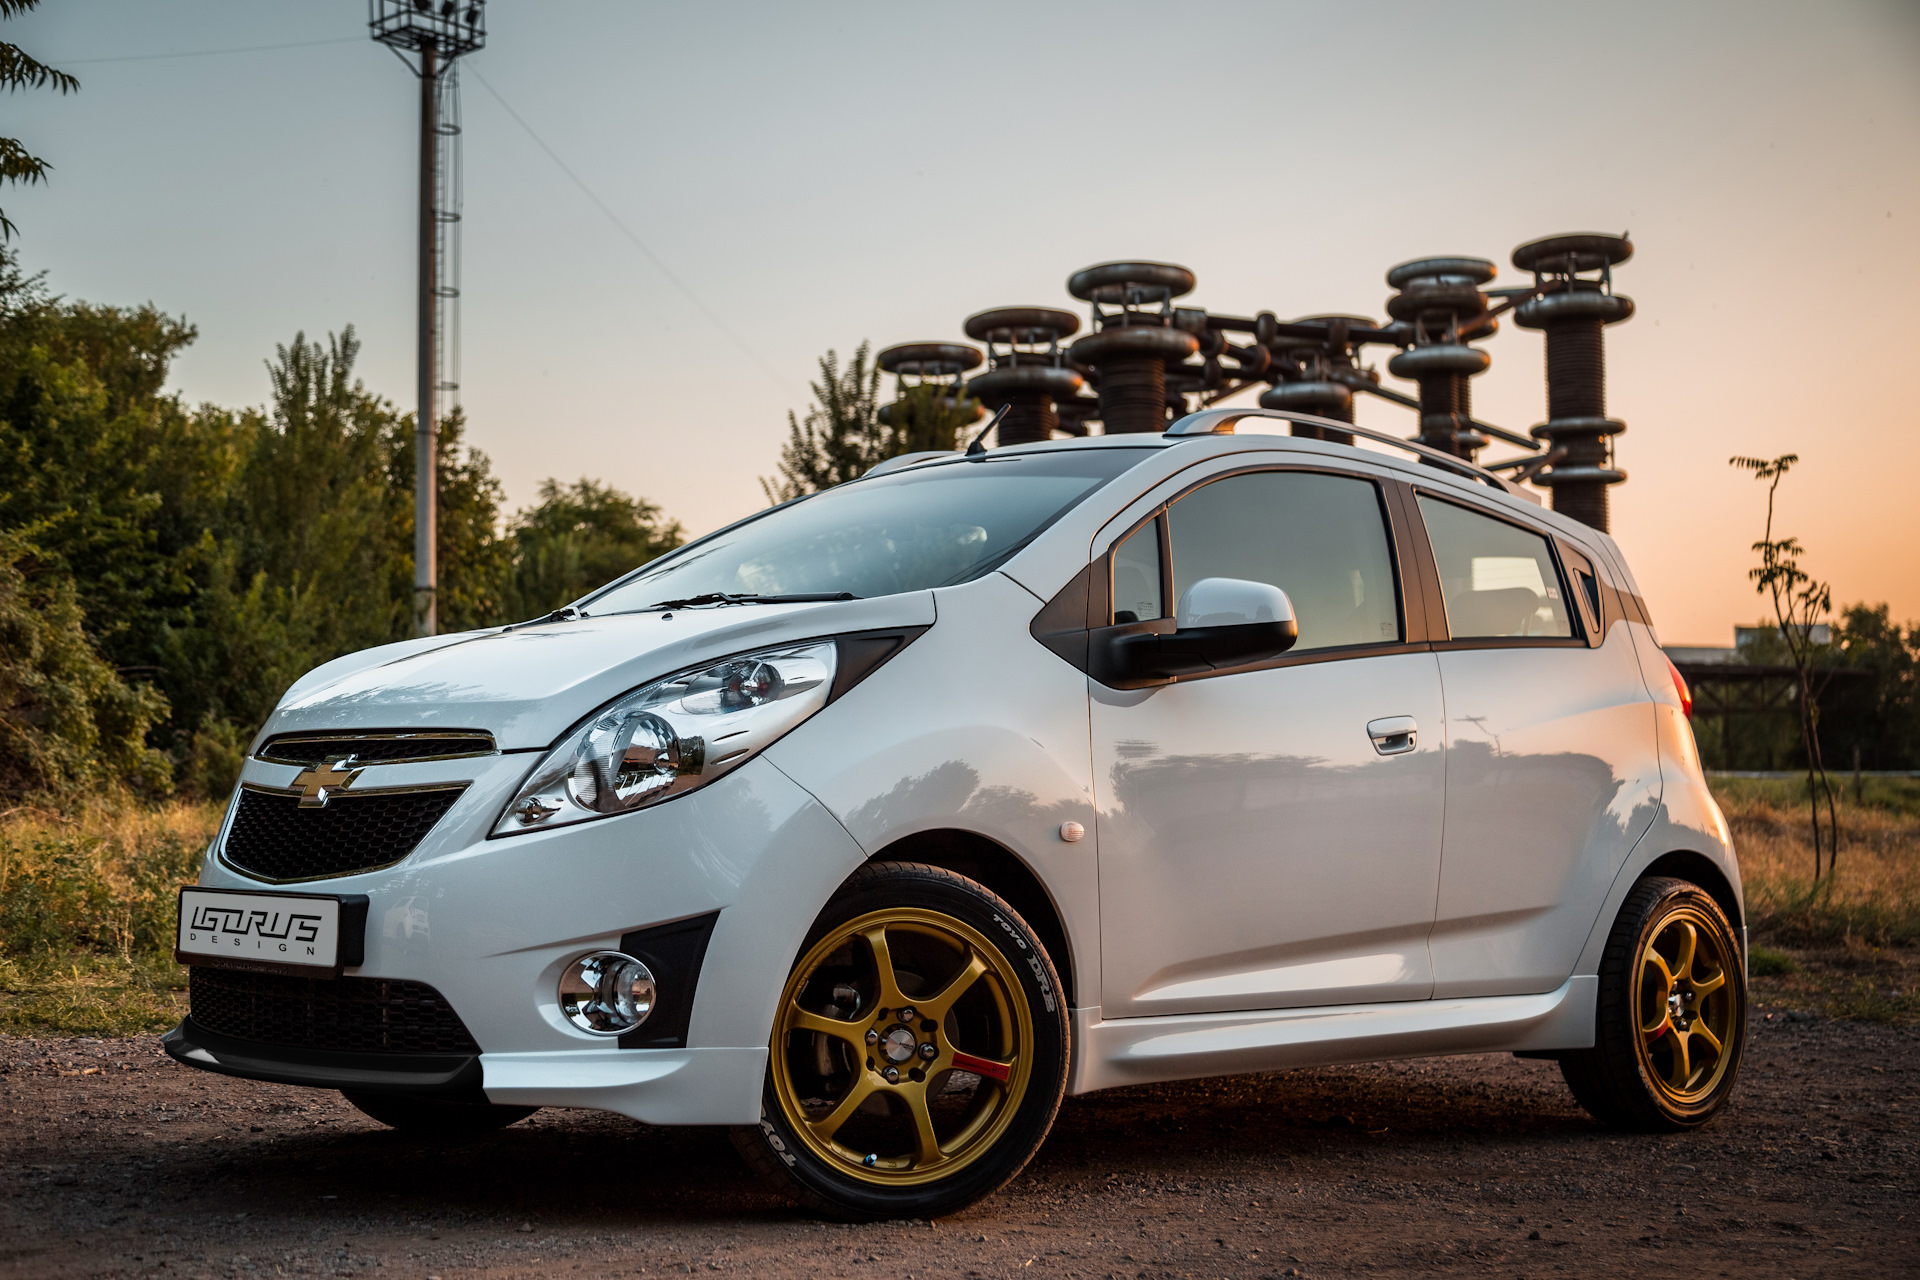 Узавтосаноат планирует запустить производство Spark в России